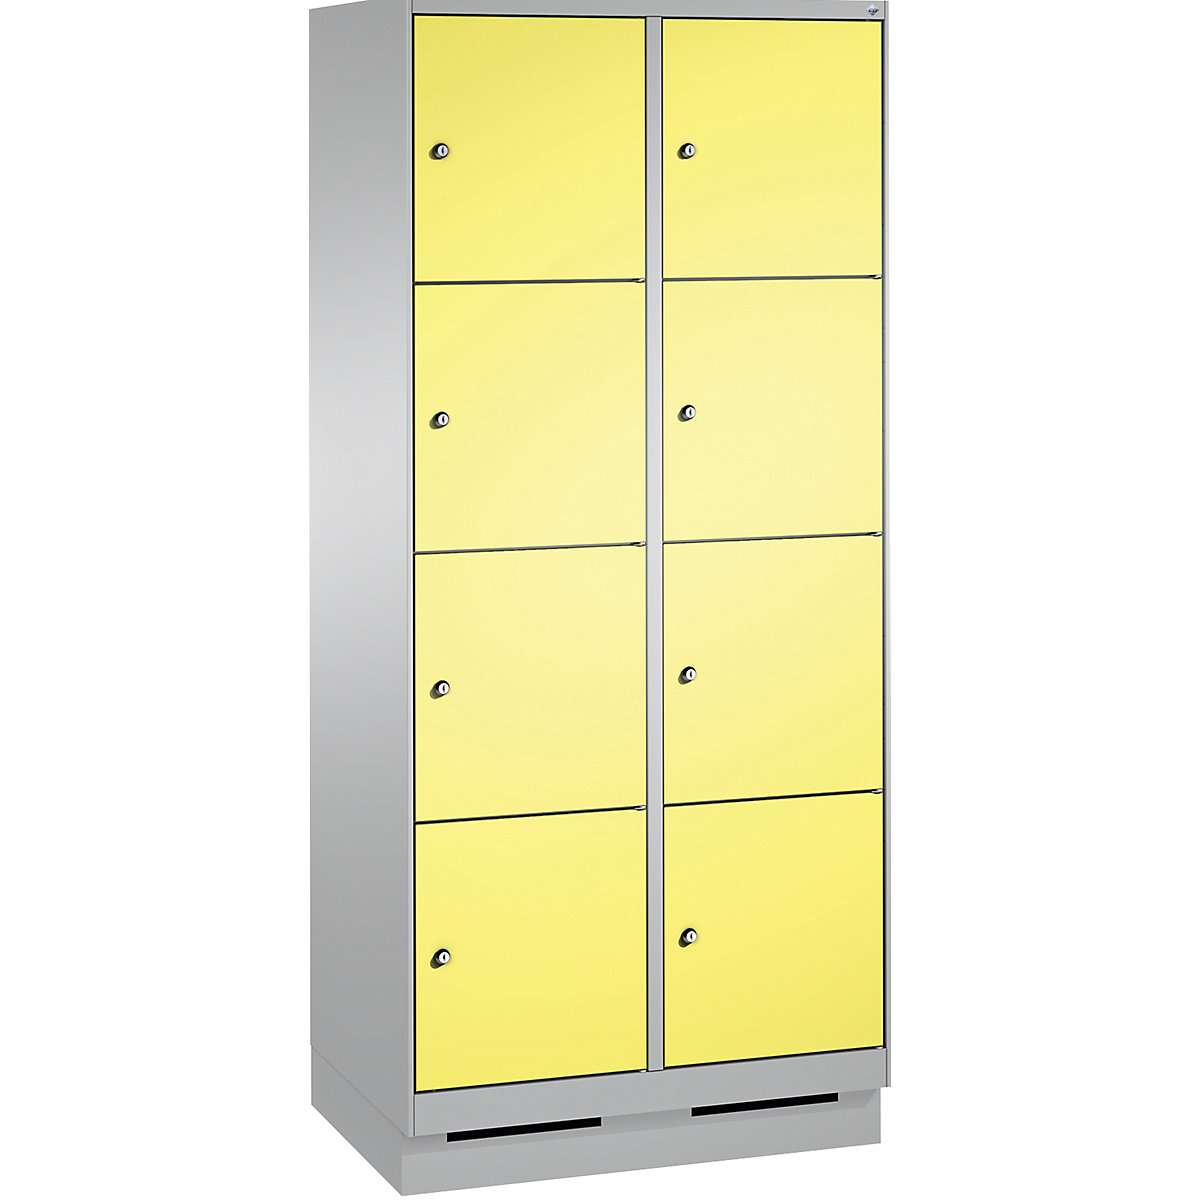 Armoire à casiers sur socle EVOLO – C+P, 2 compartiments, 4 casiers chacun, largeur compartiments 400 mm, aluminium / jaune soufre-7